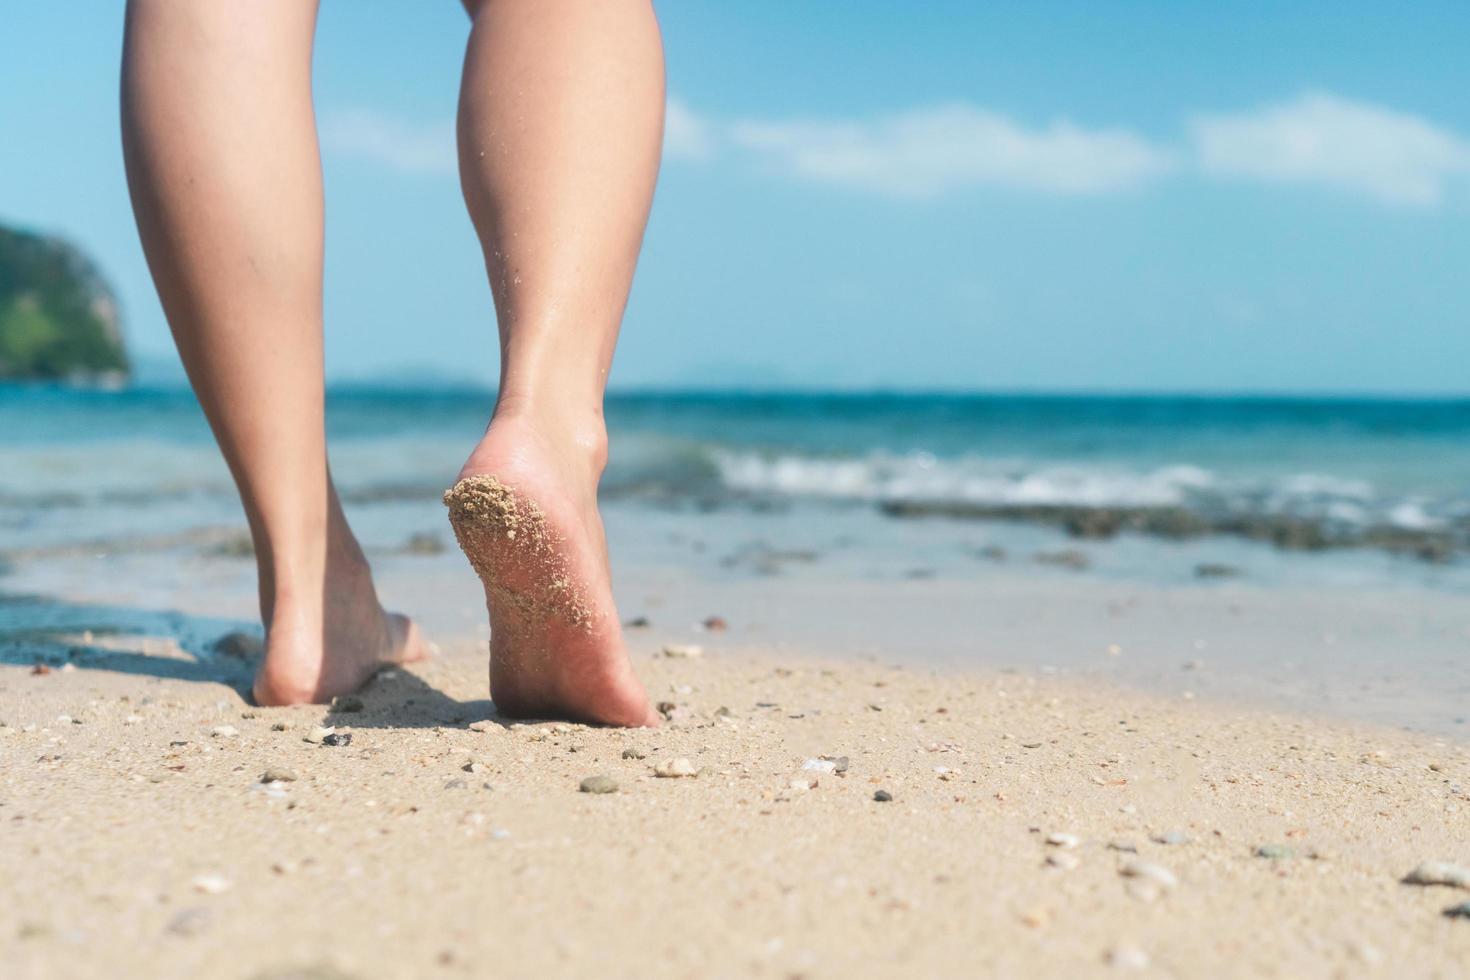 kvinnans fötter går långsamt på sandstrand foto